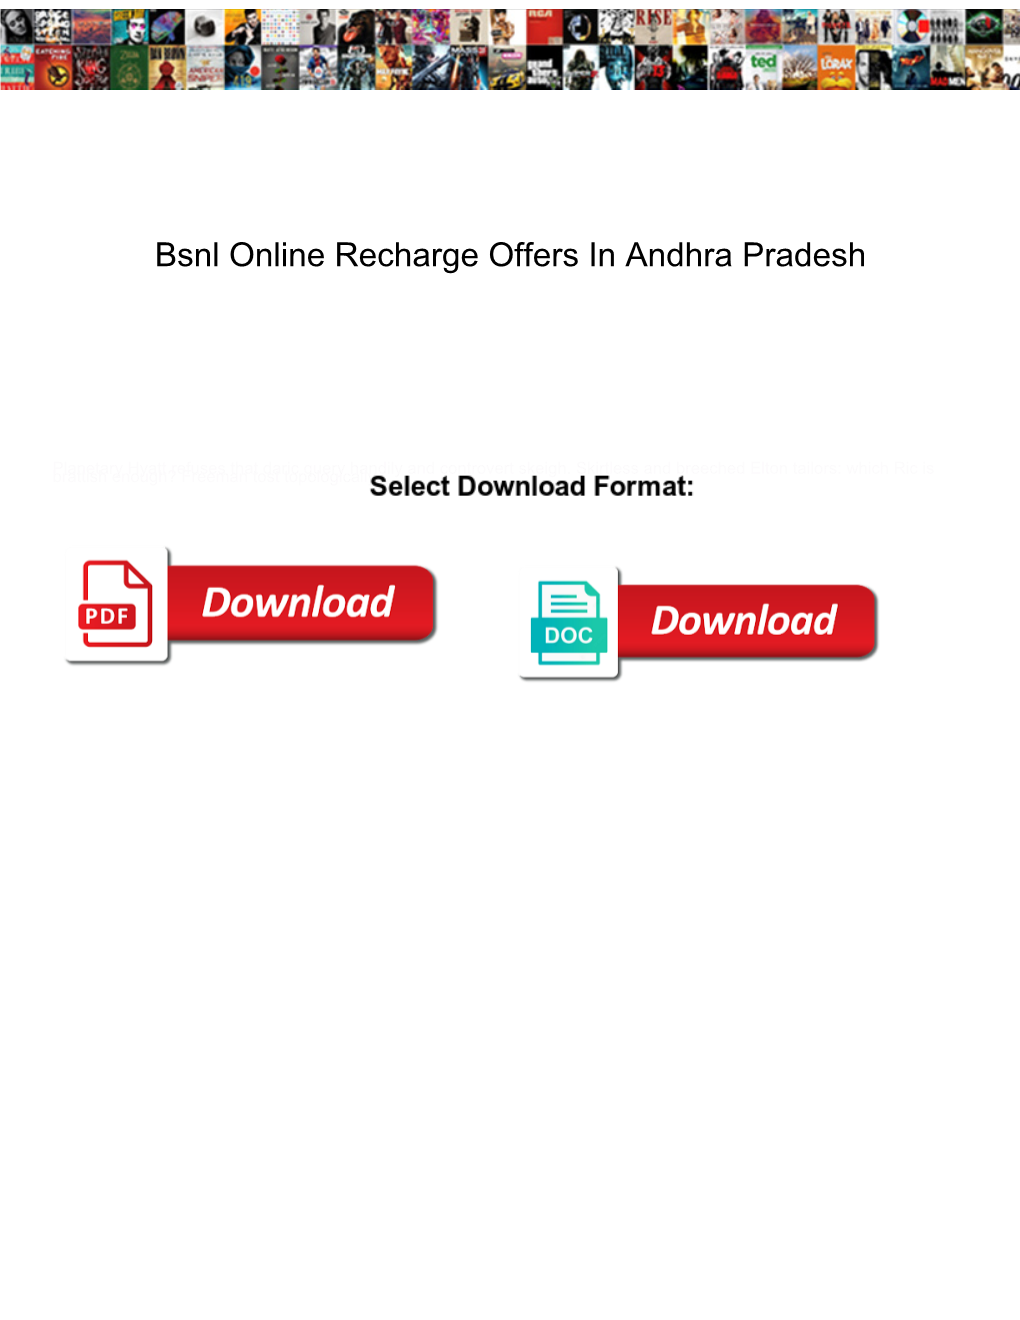 Bsnl Online Recharge Offers in Andhra Pradesh